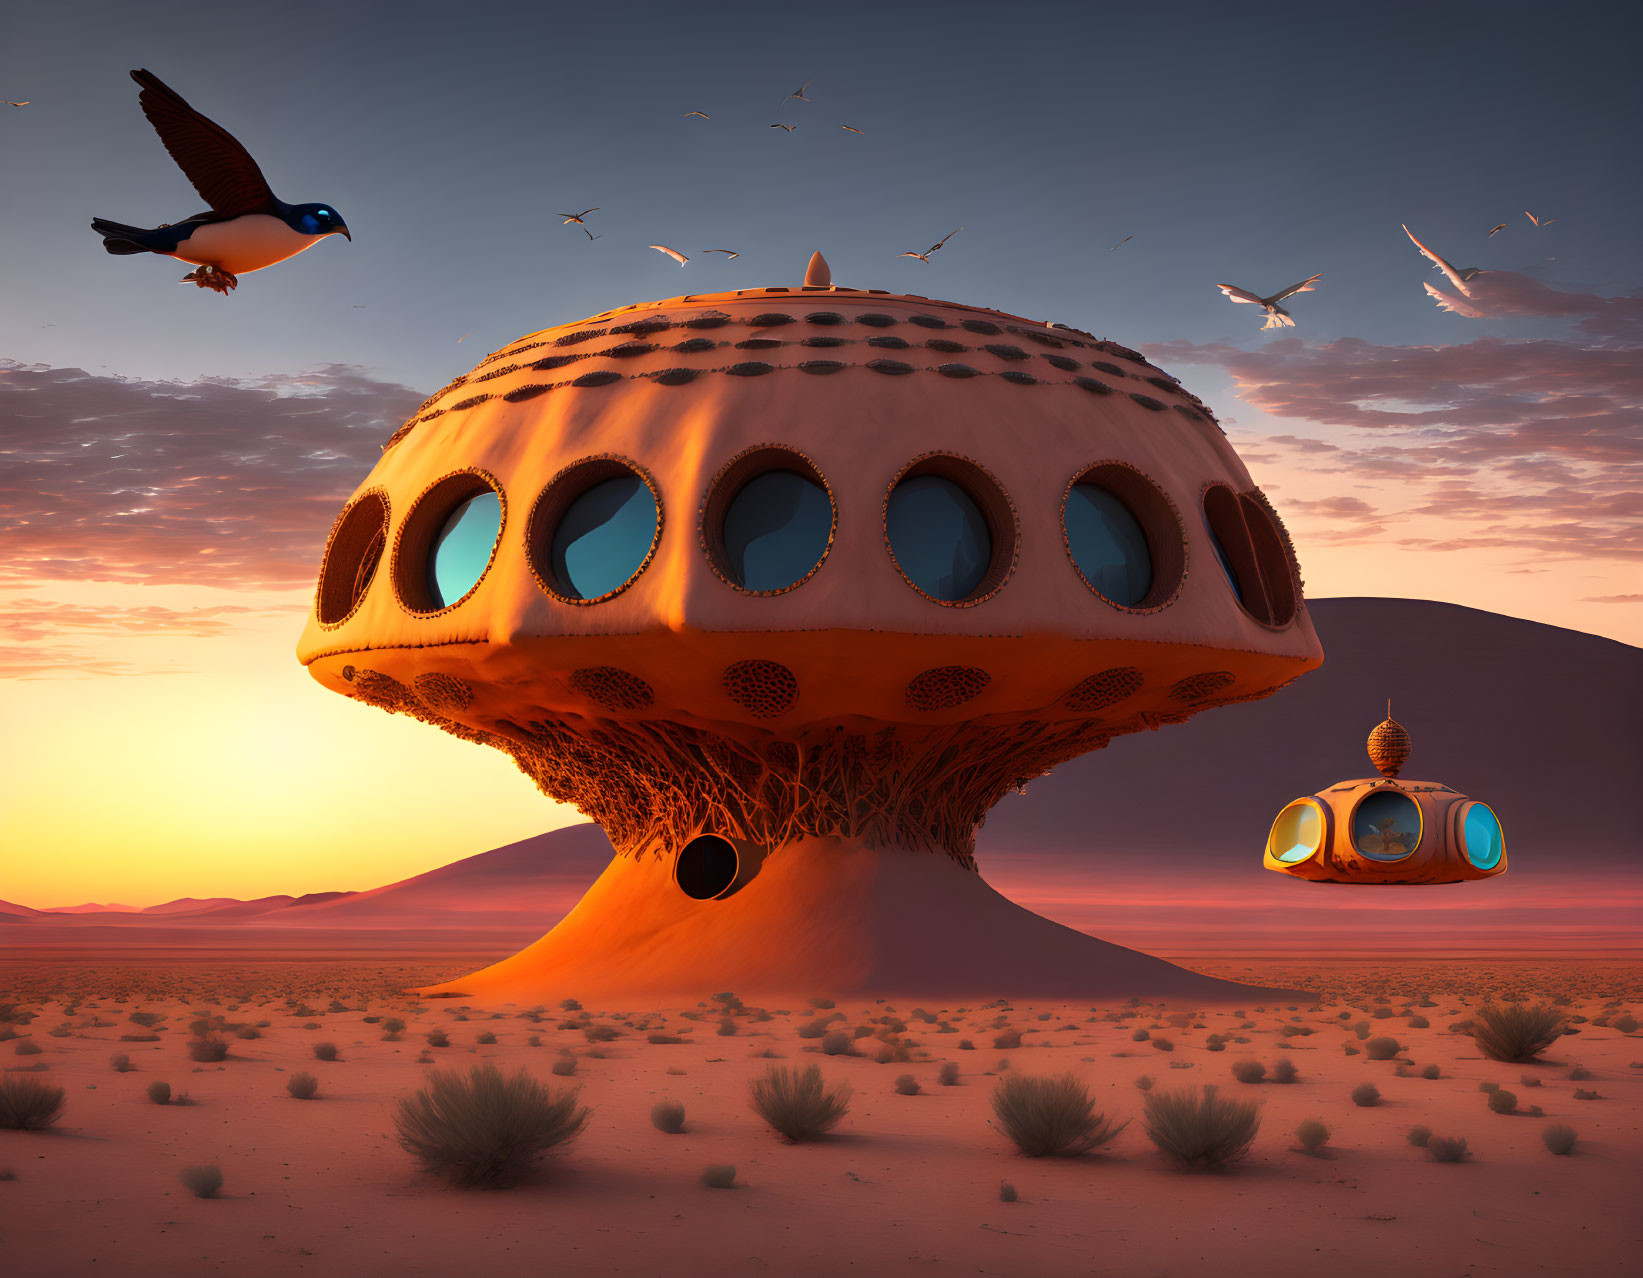 Sunset scene: mushroom-shaped house, bird, desert landscape, small structure